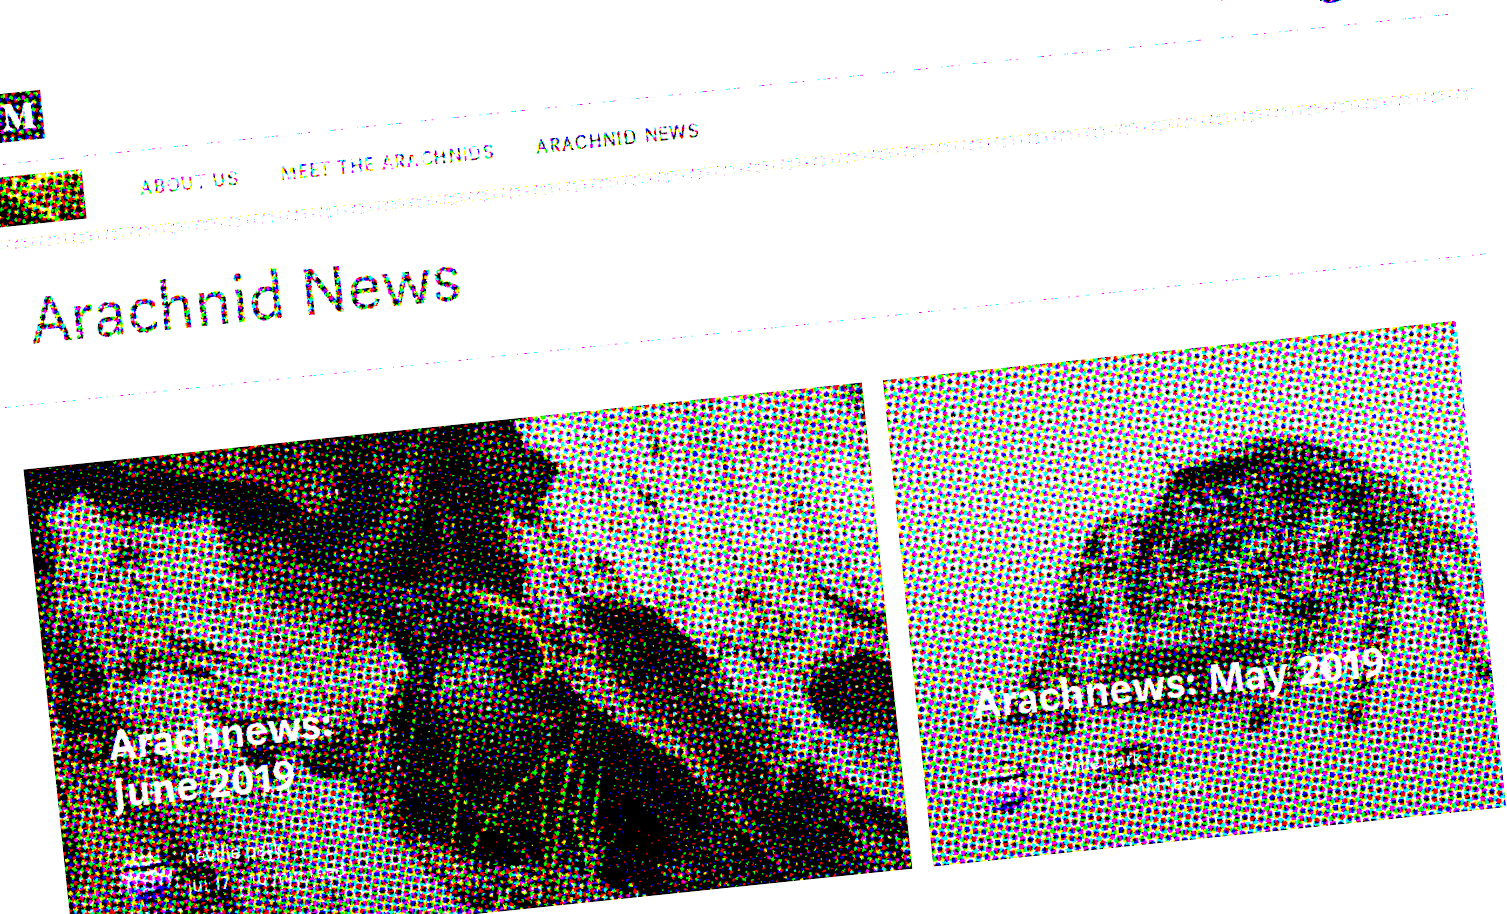 Screenshot of Arachnofiles' news section with newsprint filter